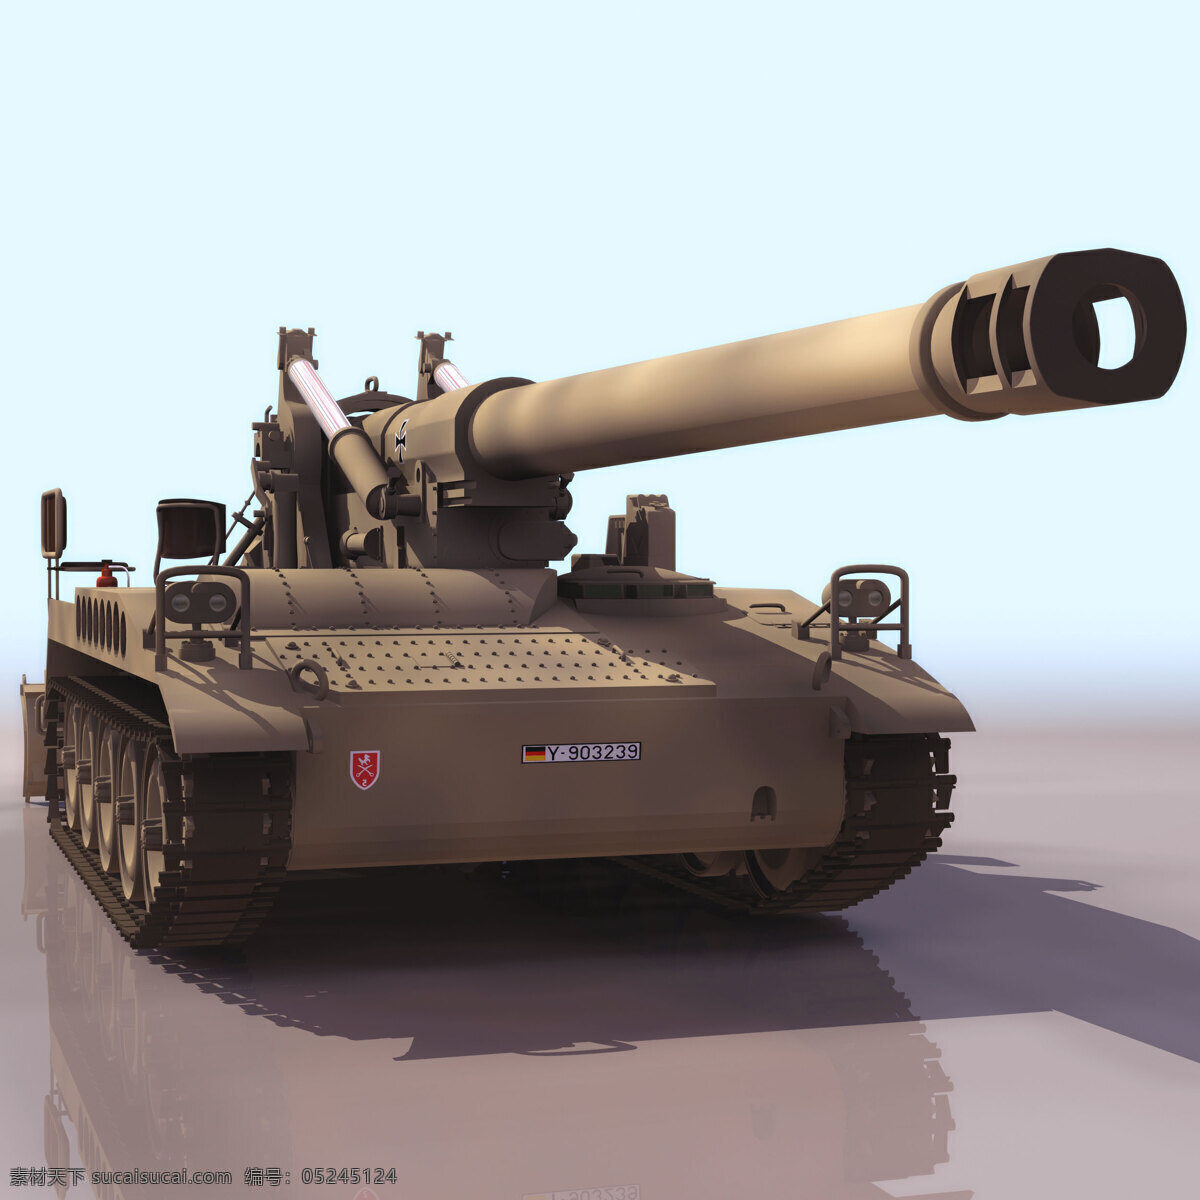 重型 自行火炮 装甲车 火炮 重型武器 3d模型素材 其他3d模型